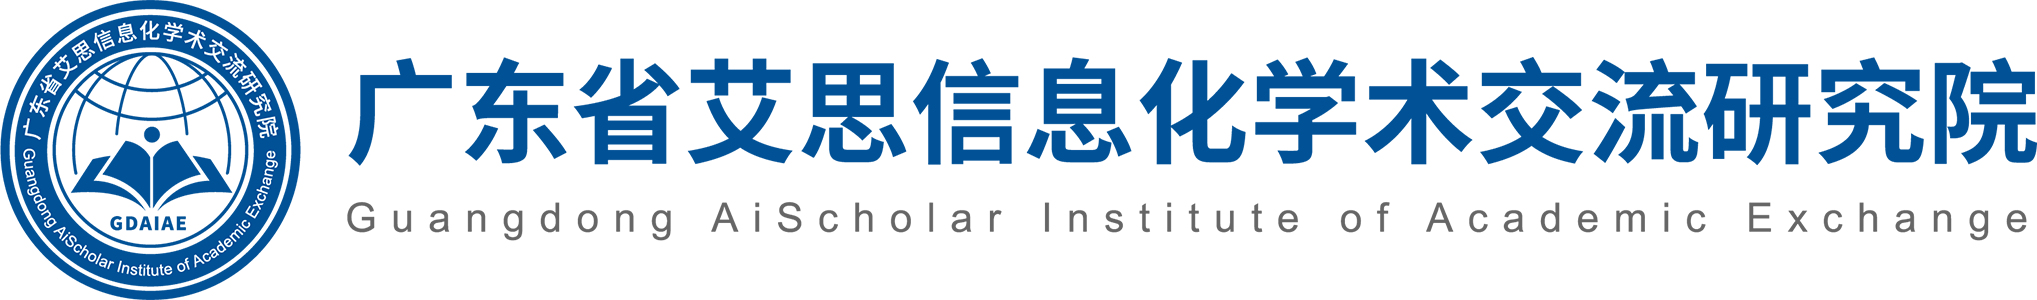 广东省艾思信息化学术交流研究院透明logo2961-436.png